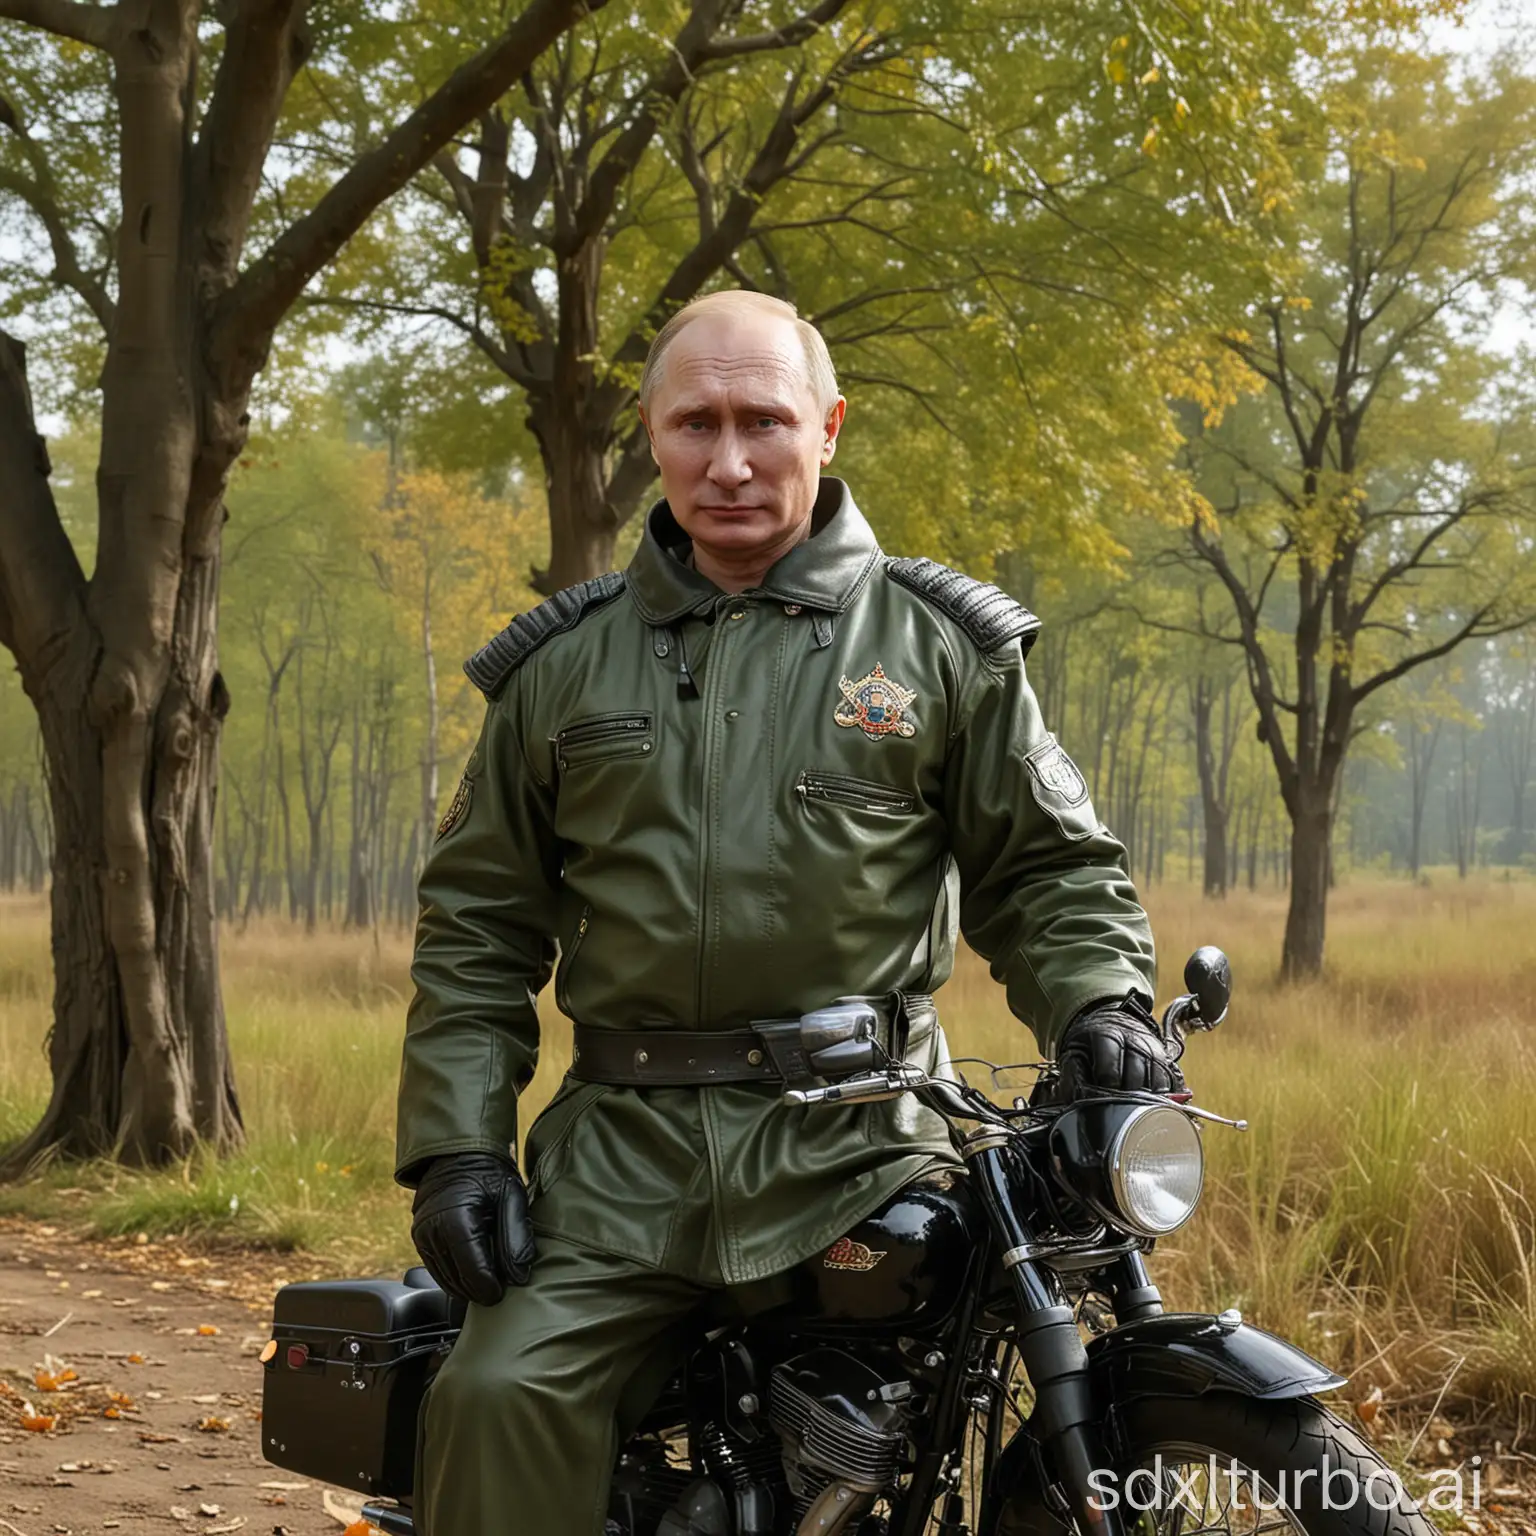 65YearOld-Putin-in-Taekwondo-Robe-Riding-Harley-Davidson-Motorcycle-Through-Autumn-Grassland